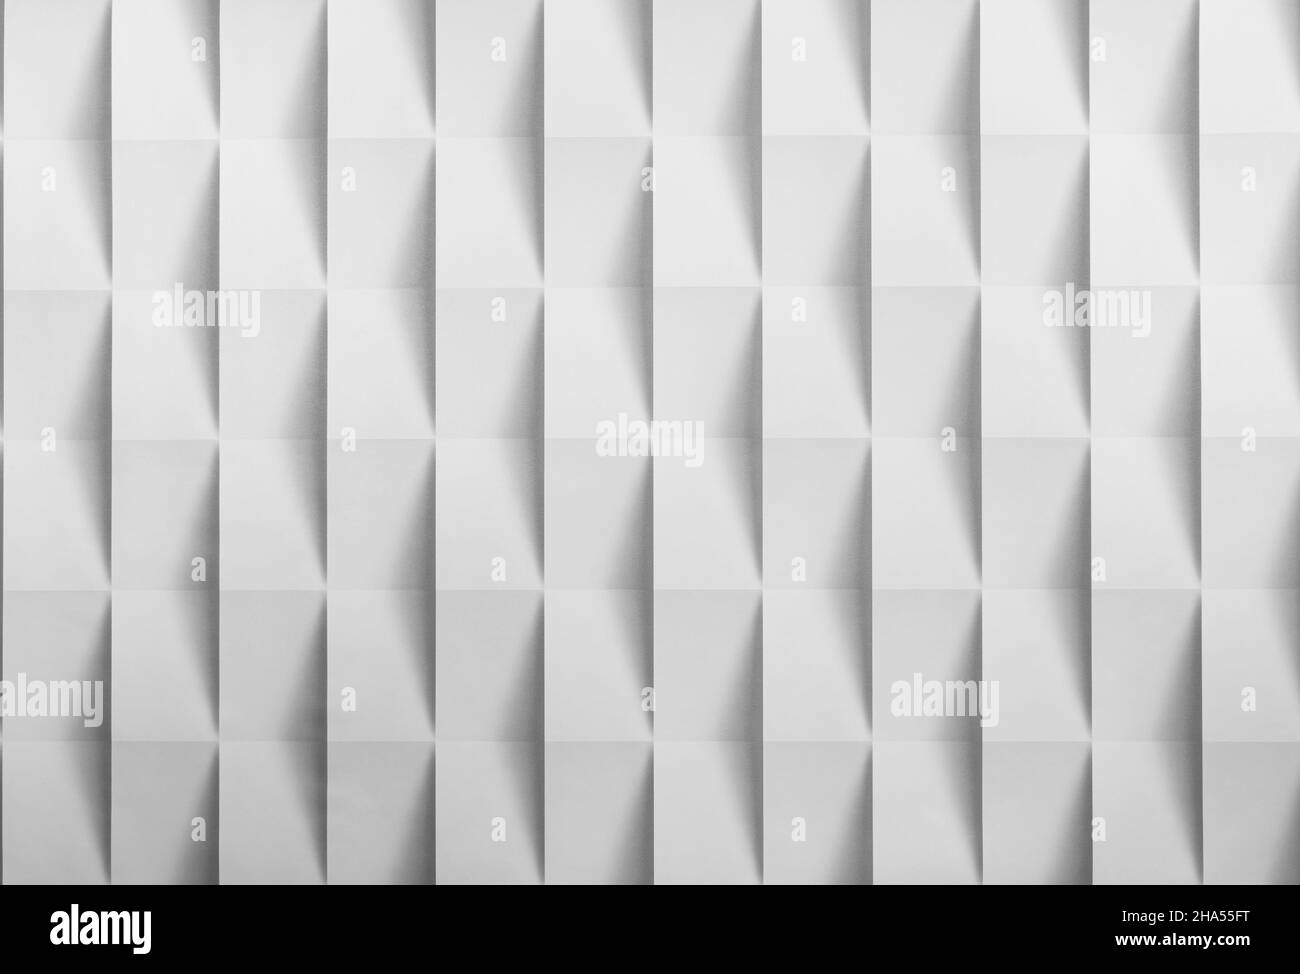 Hintergrundpanorama in Form von Würfeln, um einen Hintergrund zu erzeugen. Stockfoto